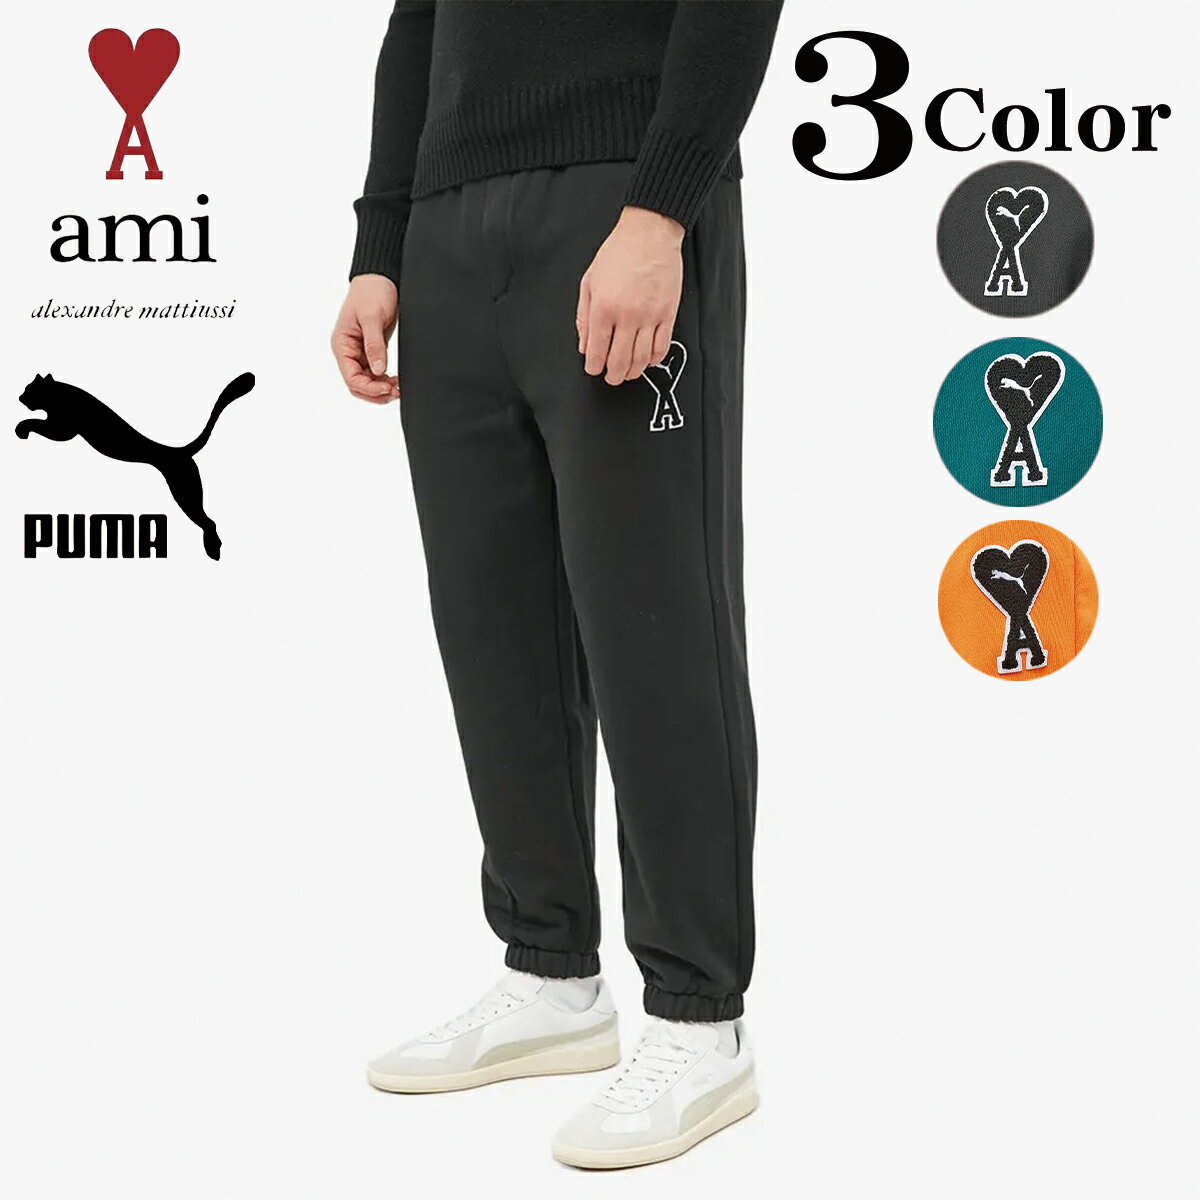 AMI Paris アミ パリス プーマ コラボ スエットパンツ スウェット パンツ PUMA X AMI SWEAT PANT メンズ レディース ユニセックス 正規品 衣類